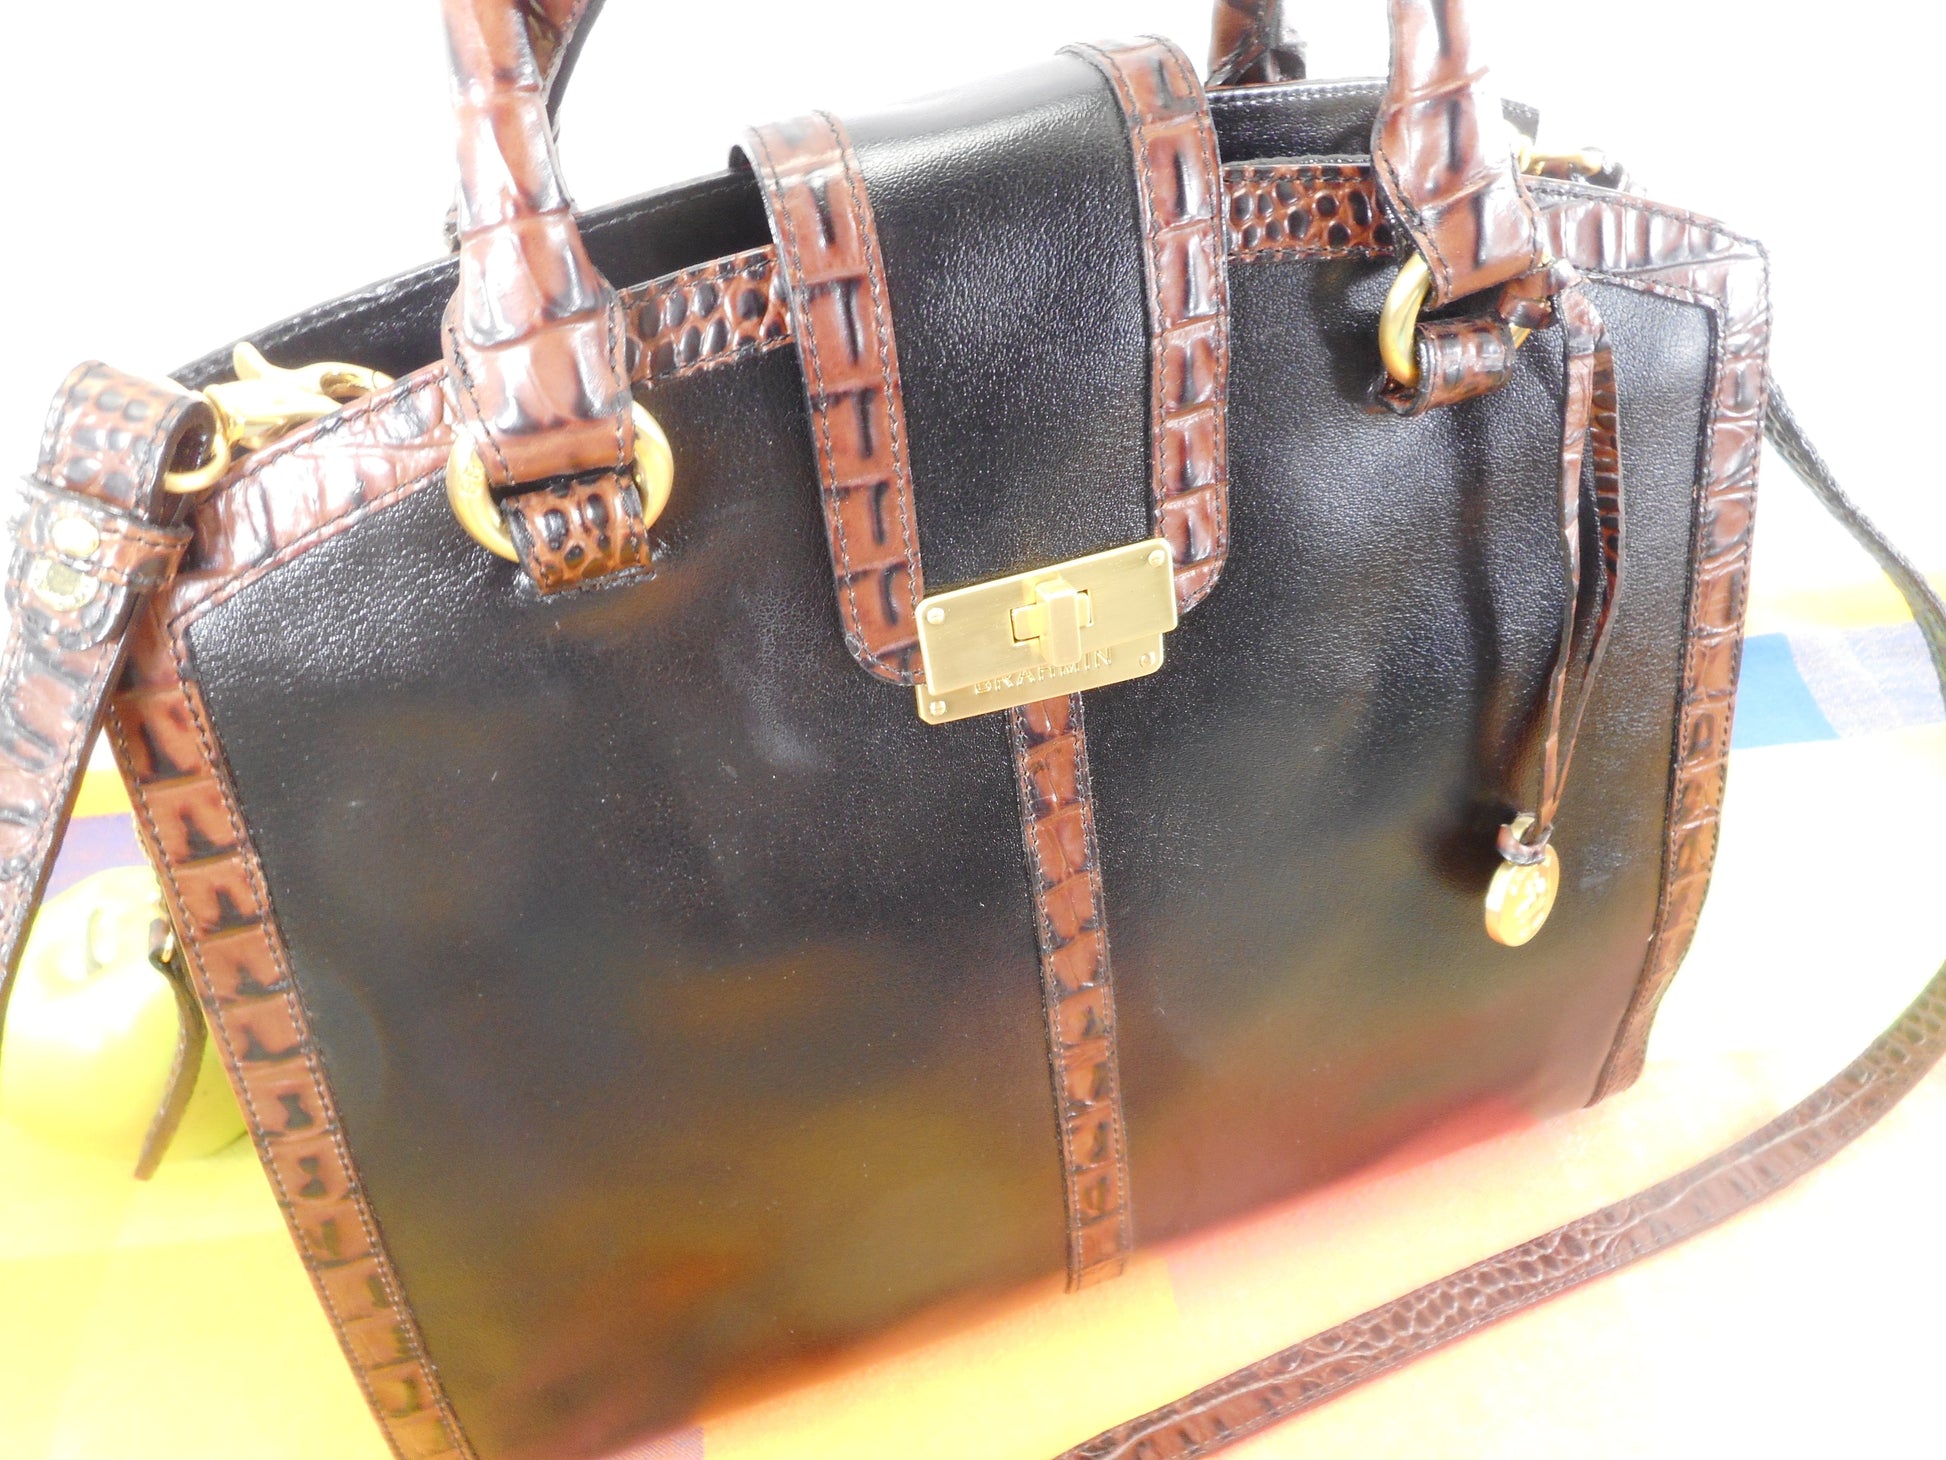 Brahmin Alligator Black Leather Satchel Handbag Shoulder Bag - Used Once EUC Pre-owned